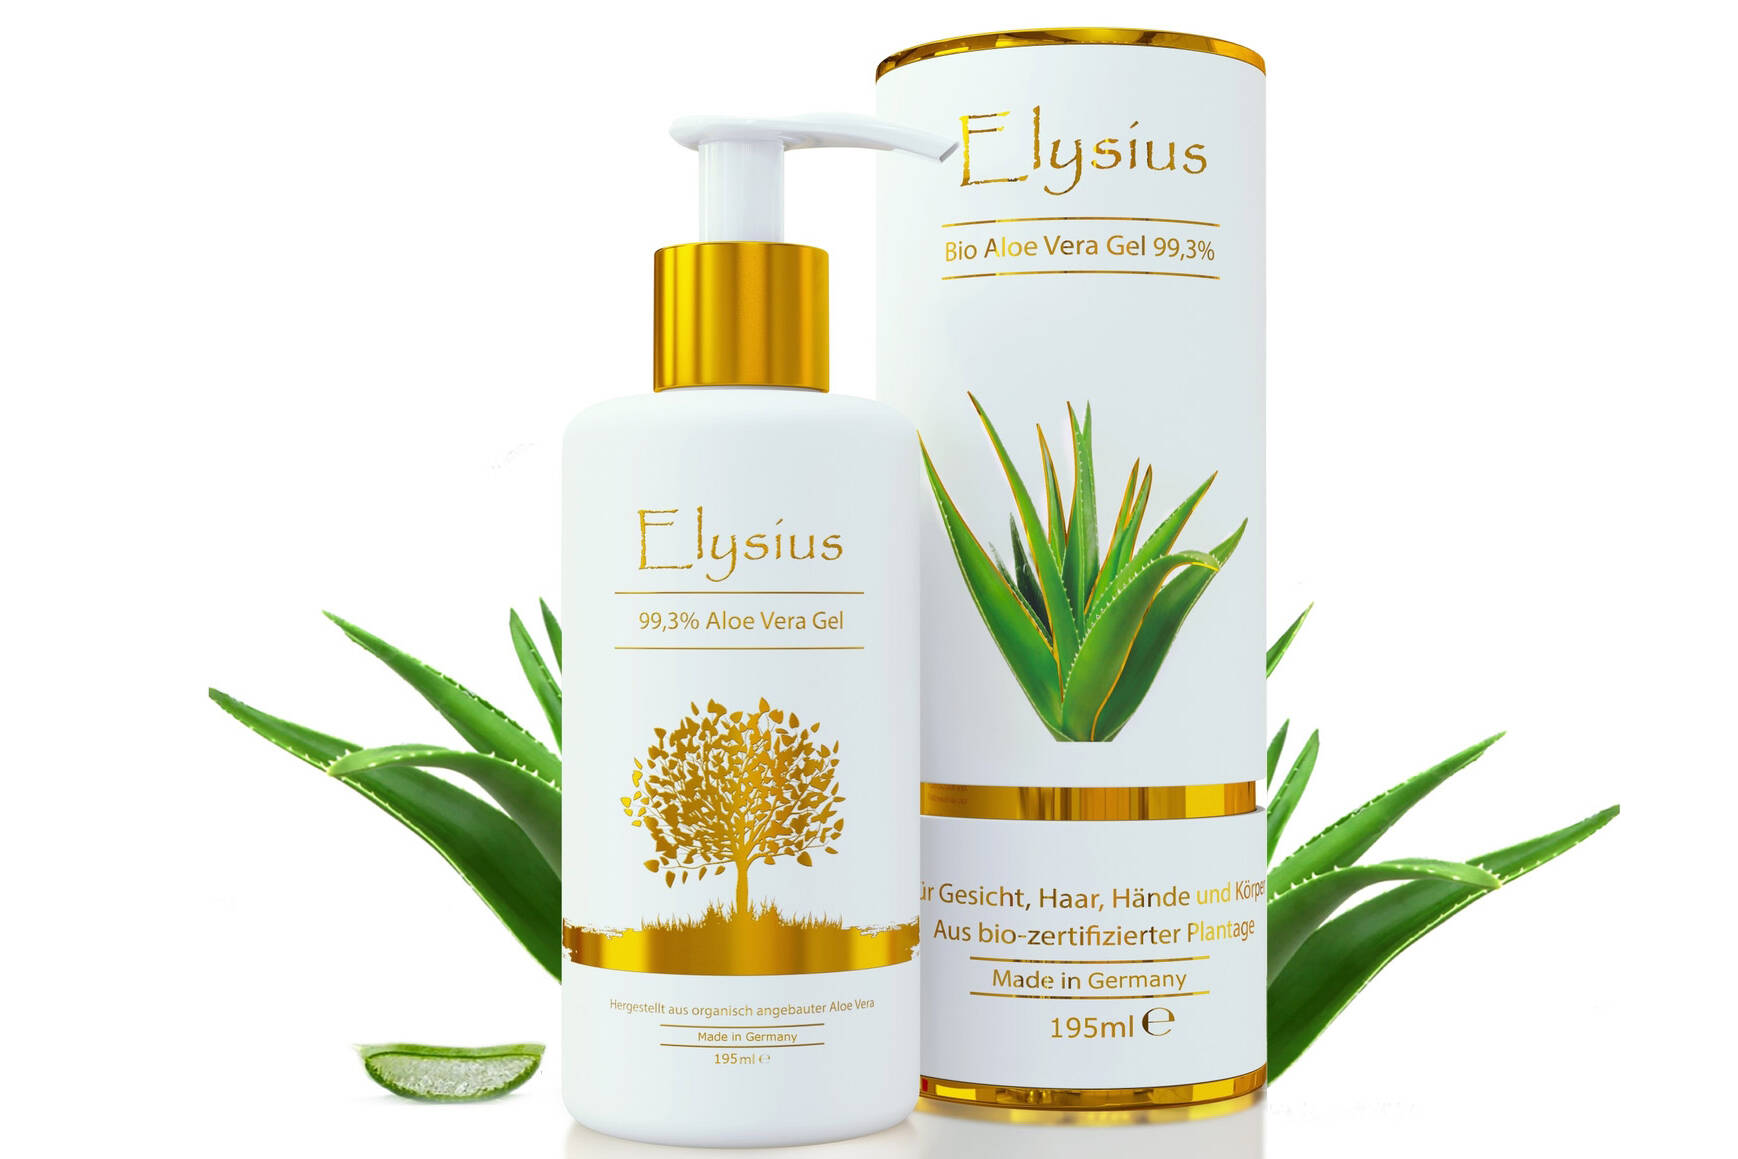 Elysius produse cosmetice ecologice ce contin 99,3% suc extras din frunze de Aloe Vera cultivata ecologic in Insulele Canare.